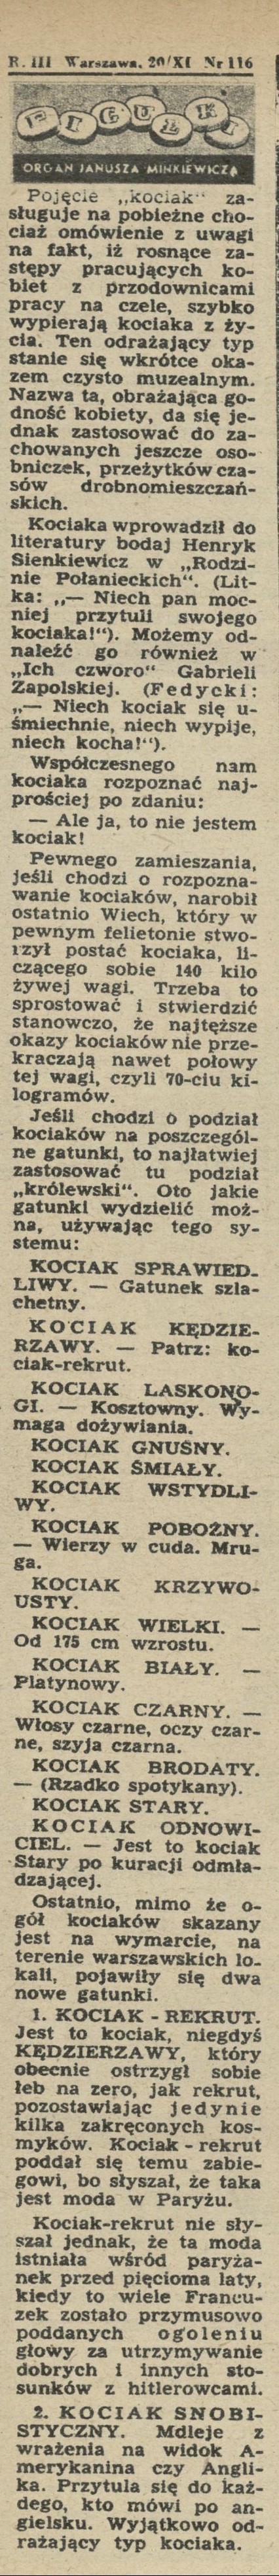 Pigułki - organ Janusza Minkiewicza